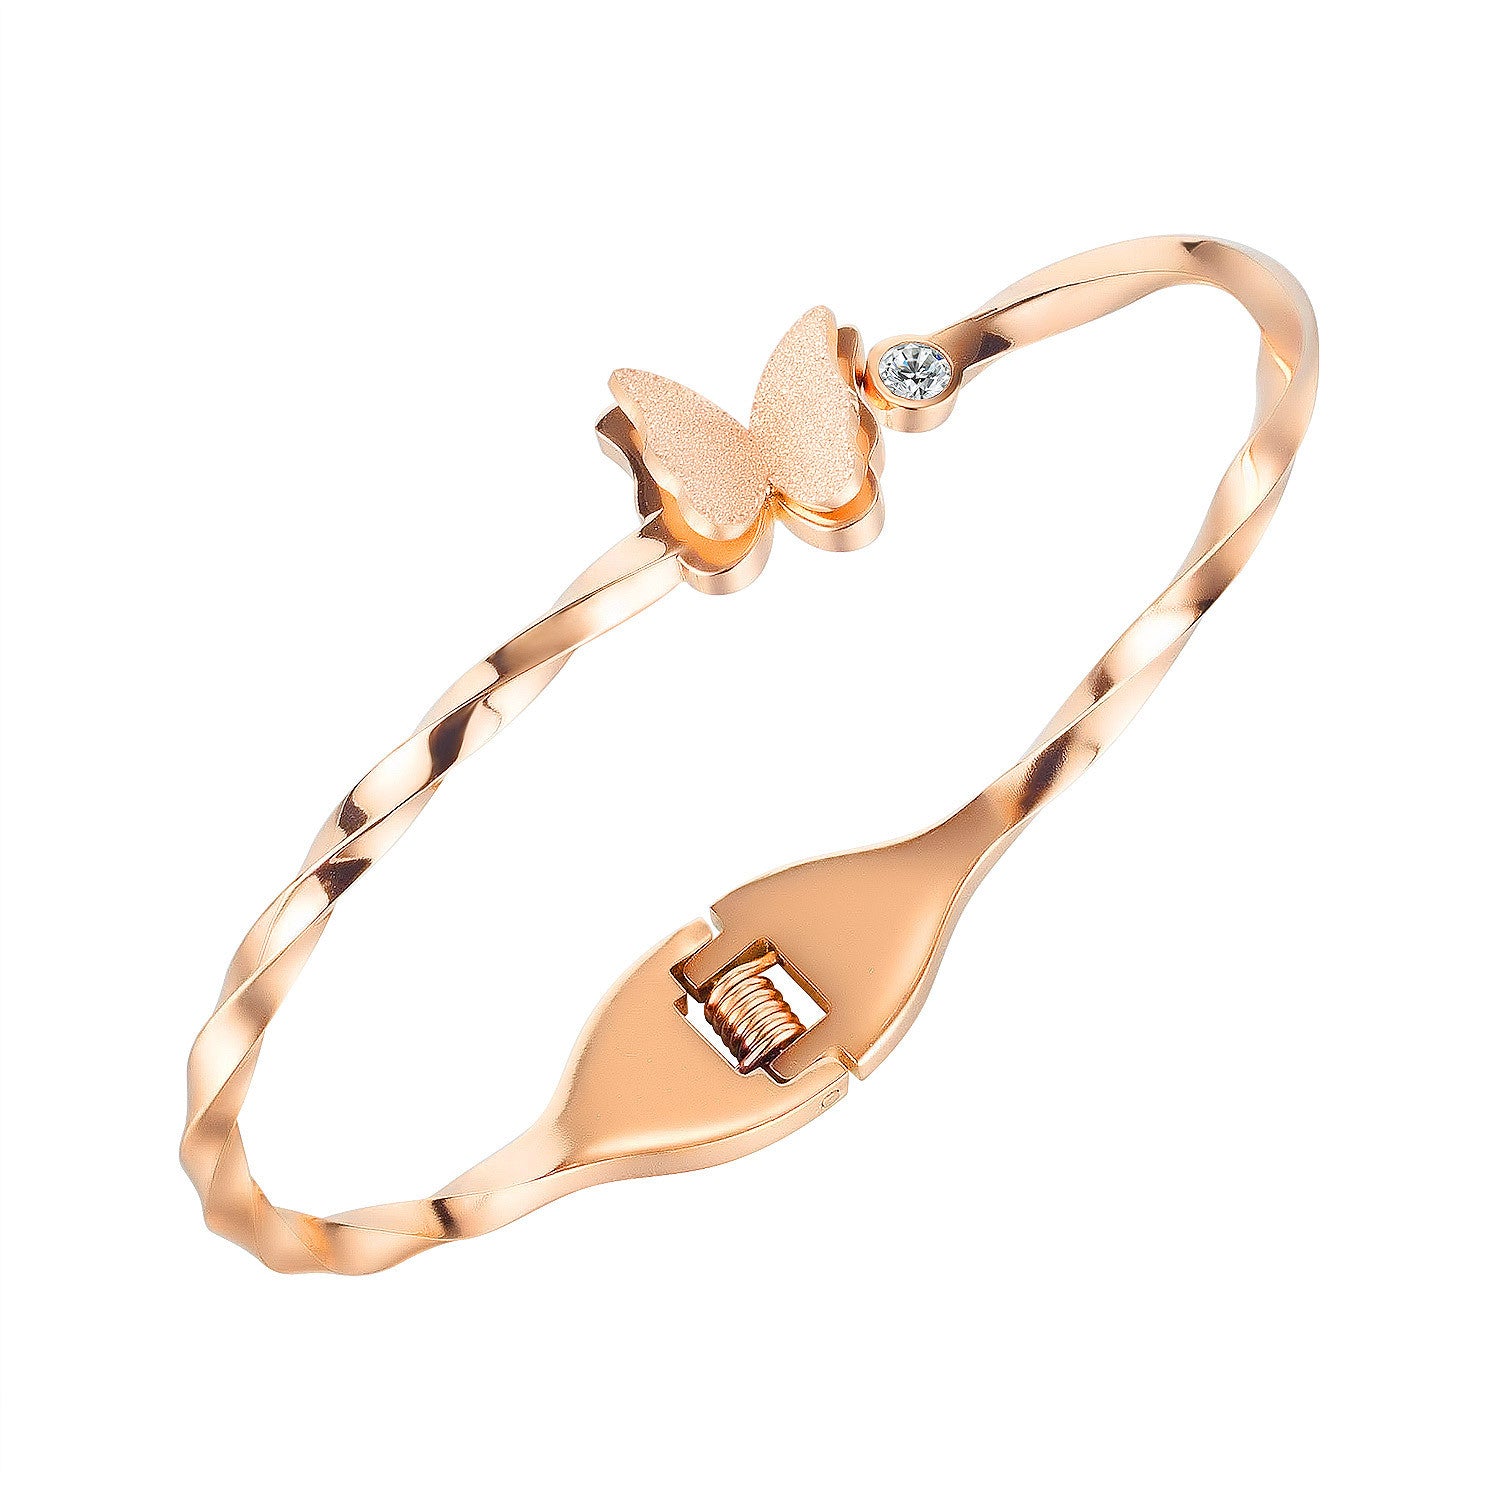 Women's Bracelet,Light Luxury,With Butterfly,Twisted Design